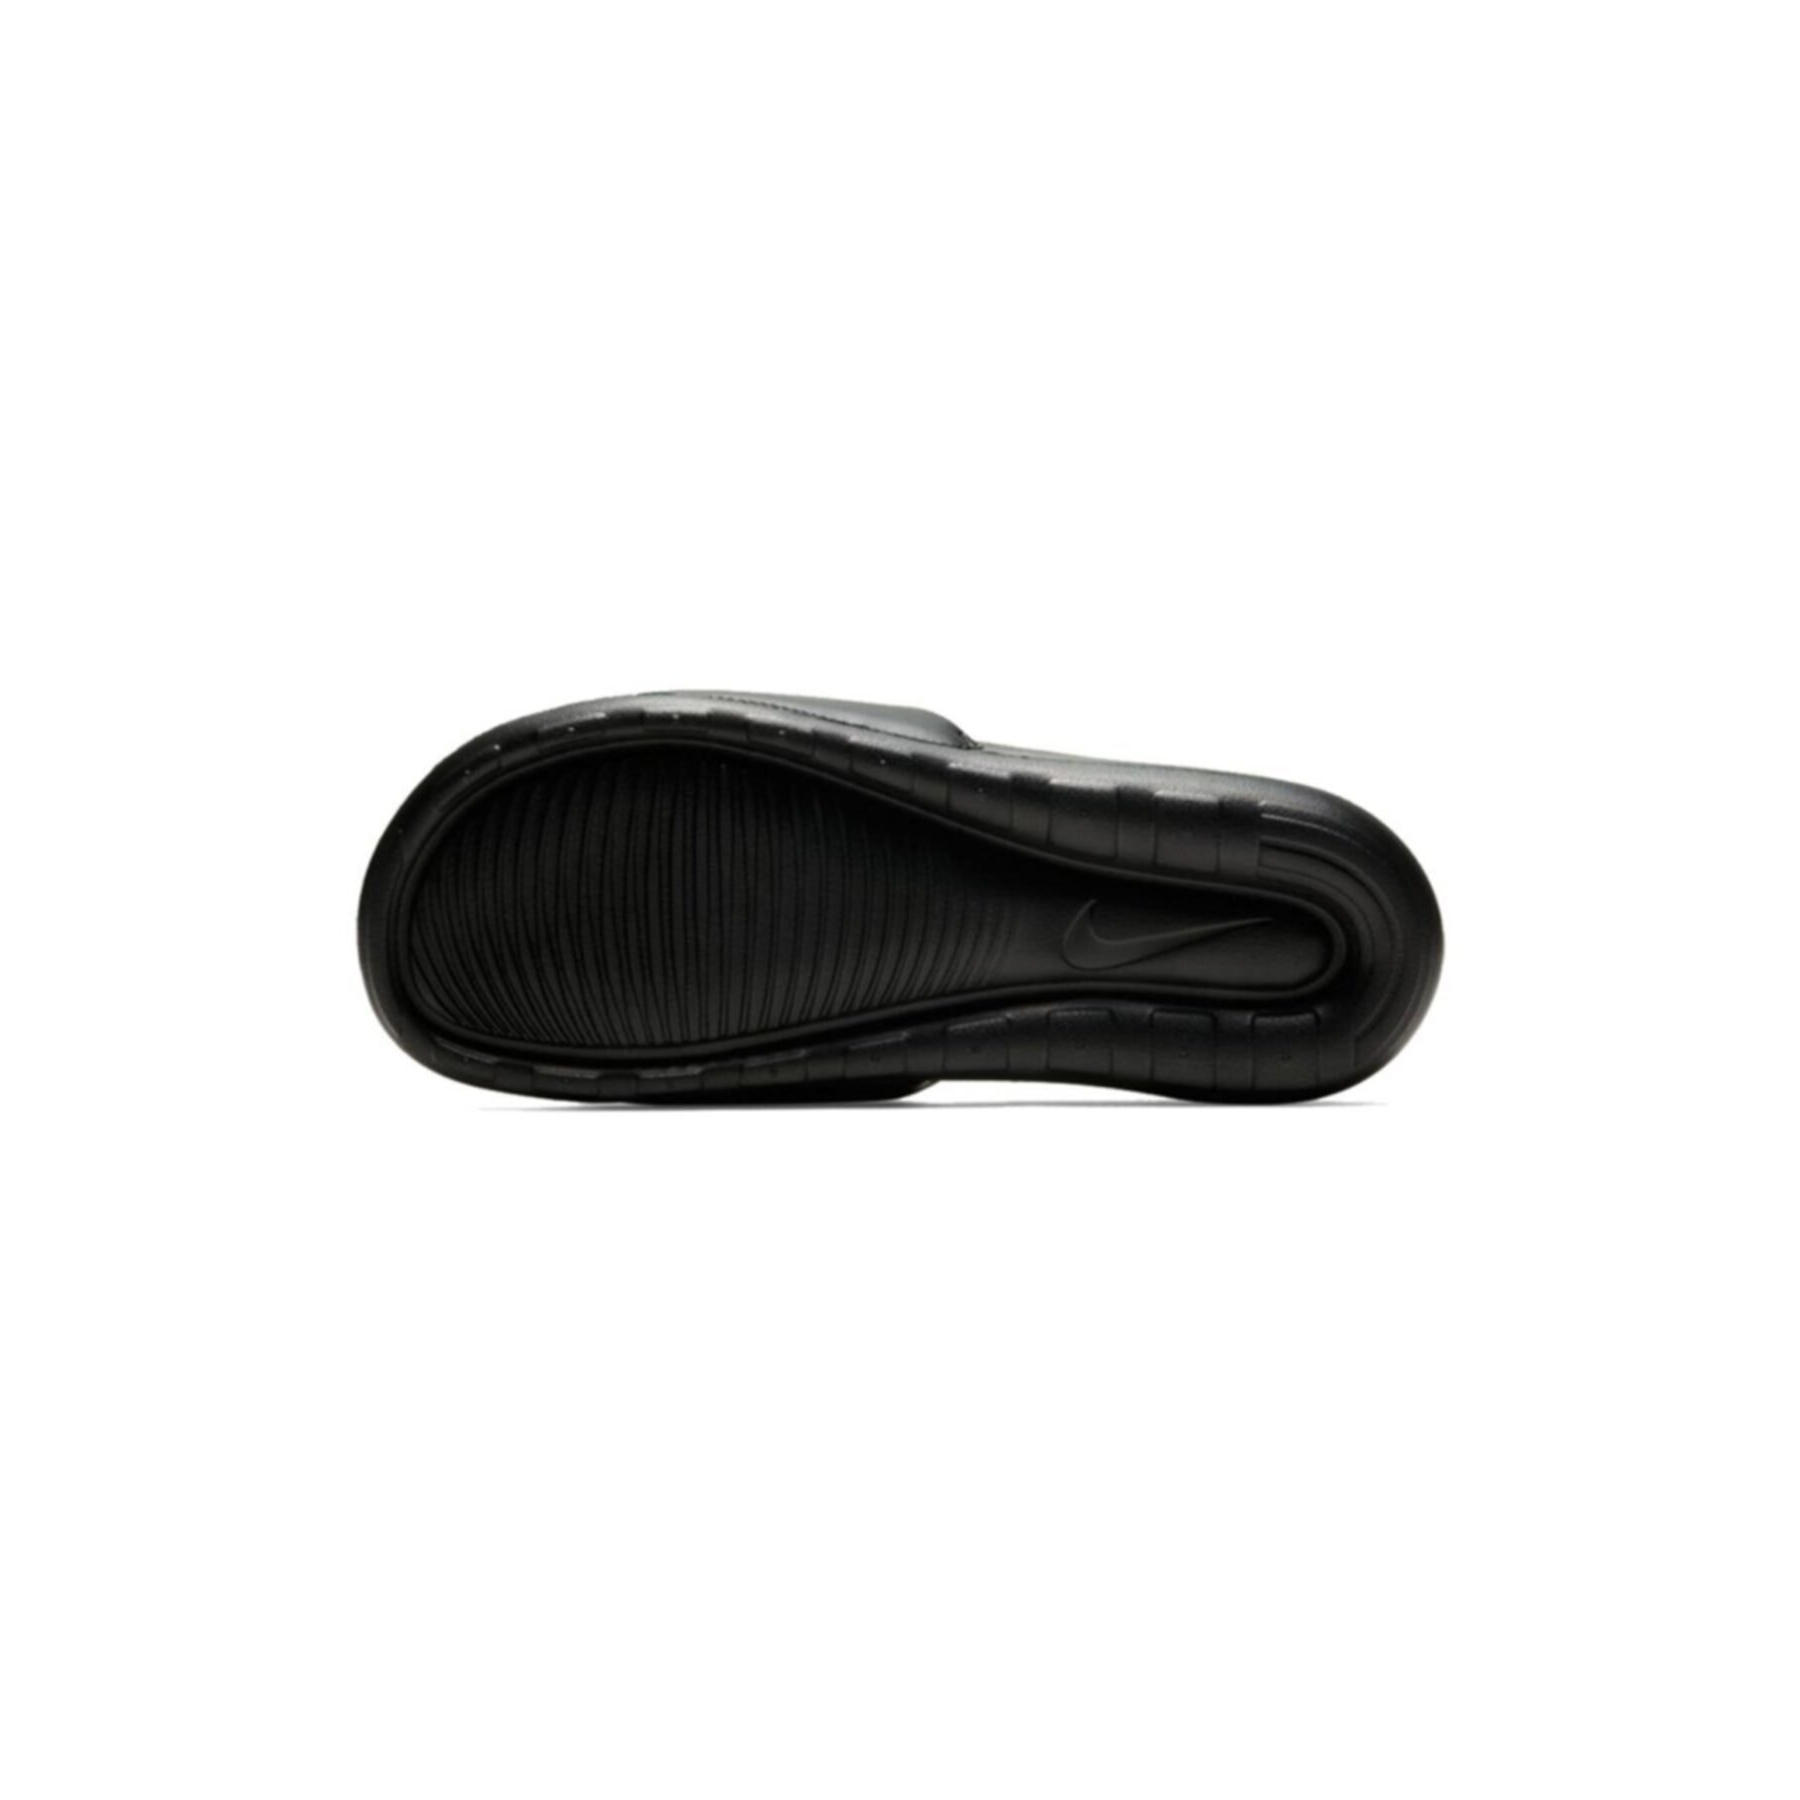 Nike Victori One Erkek Siyah Terlik (CN9675-003)